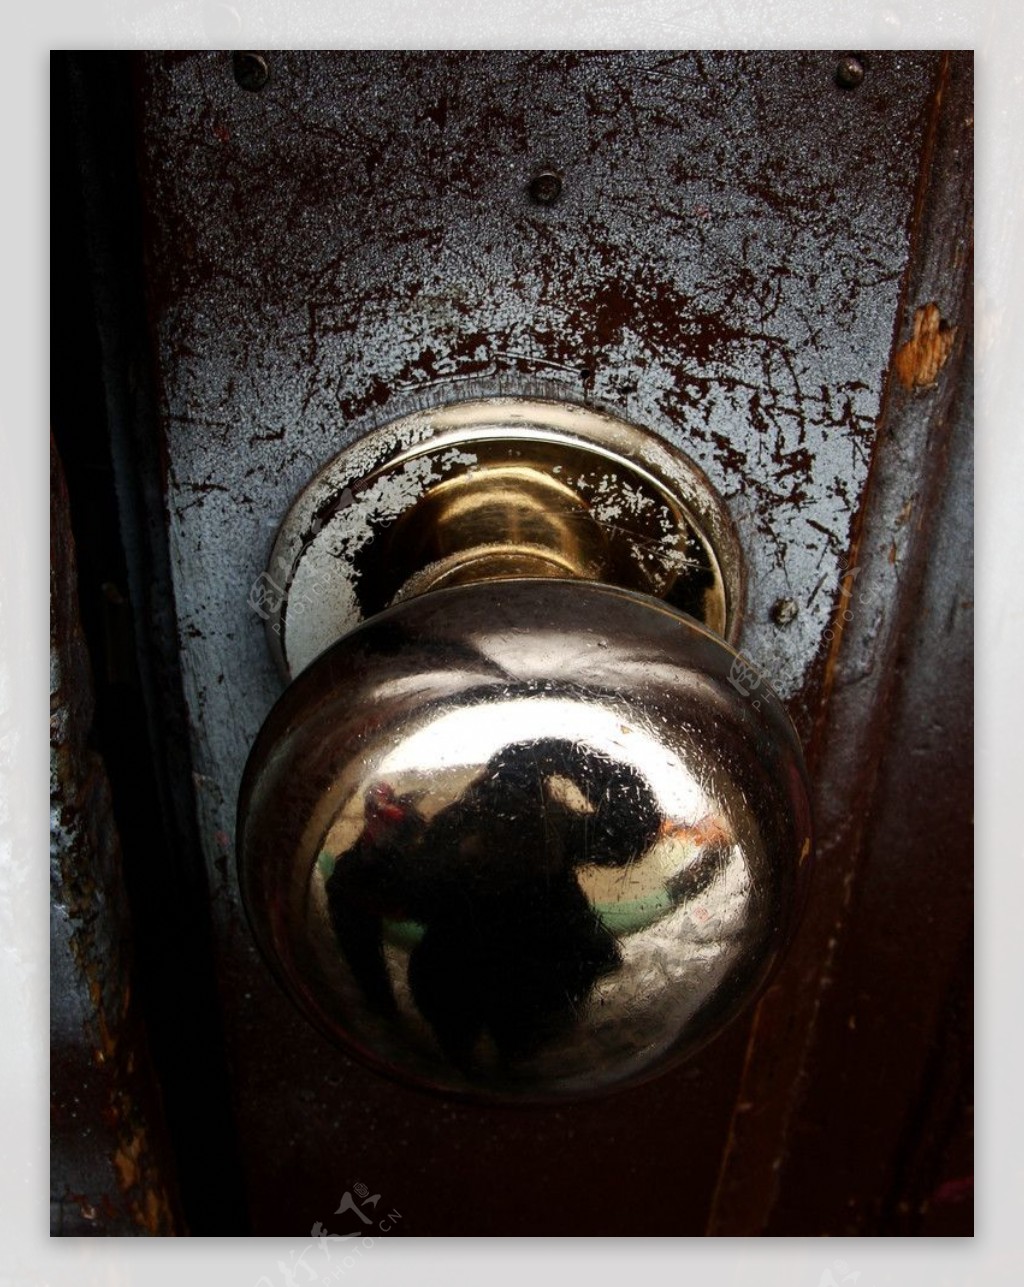 老旧门锁图片